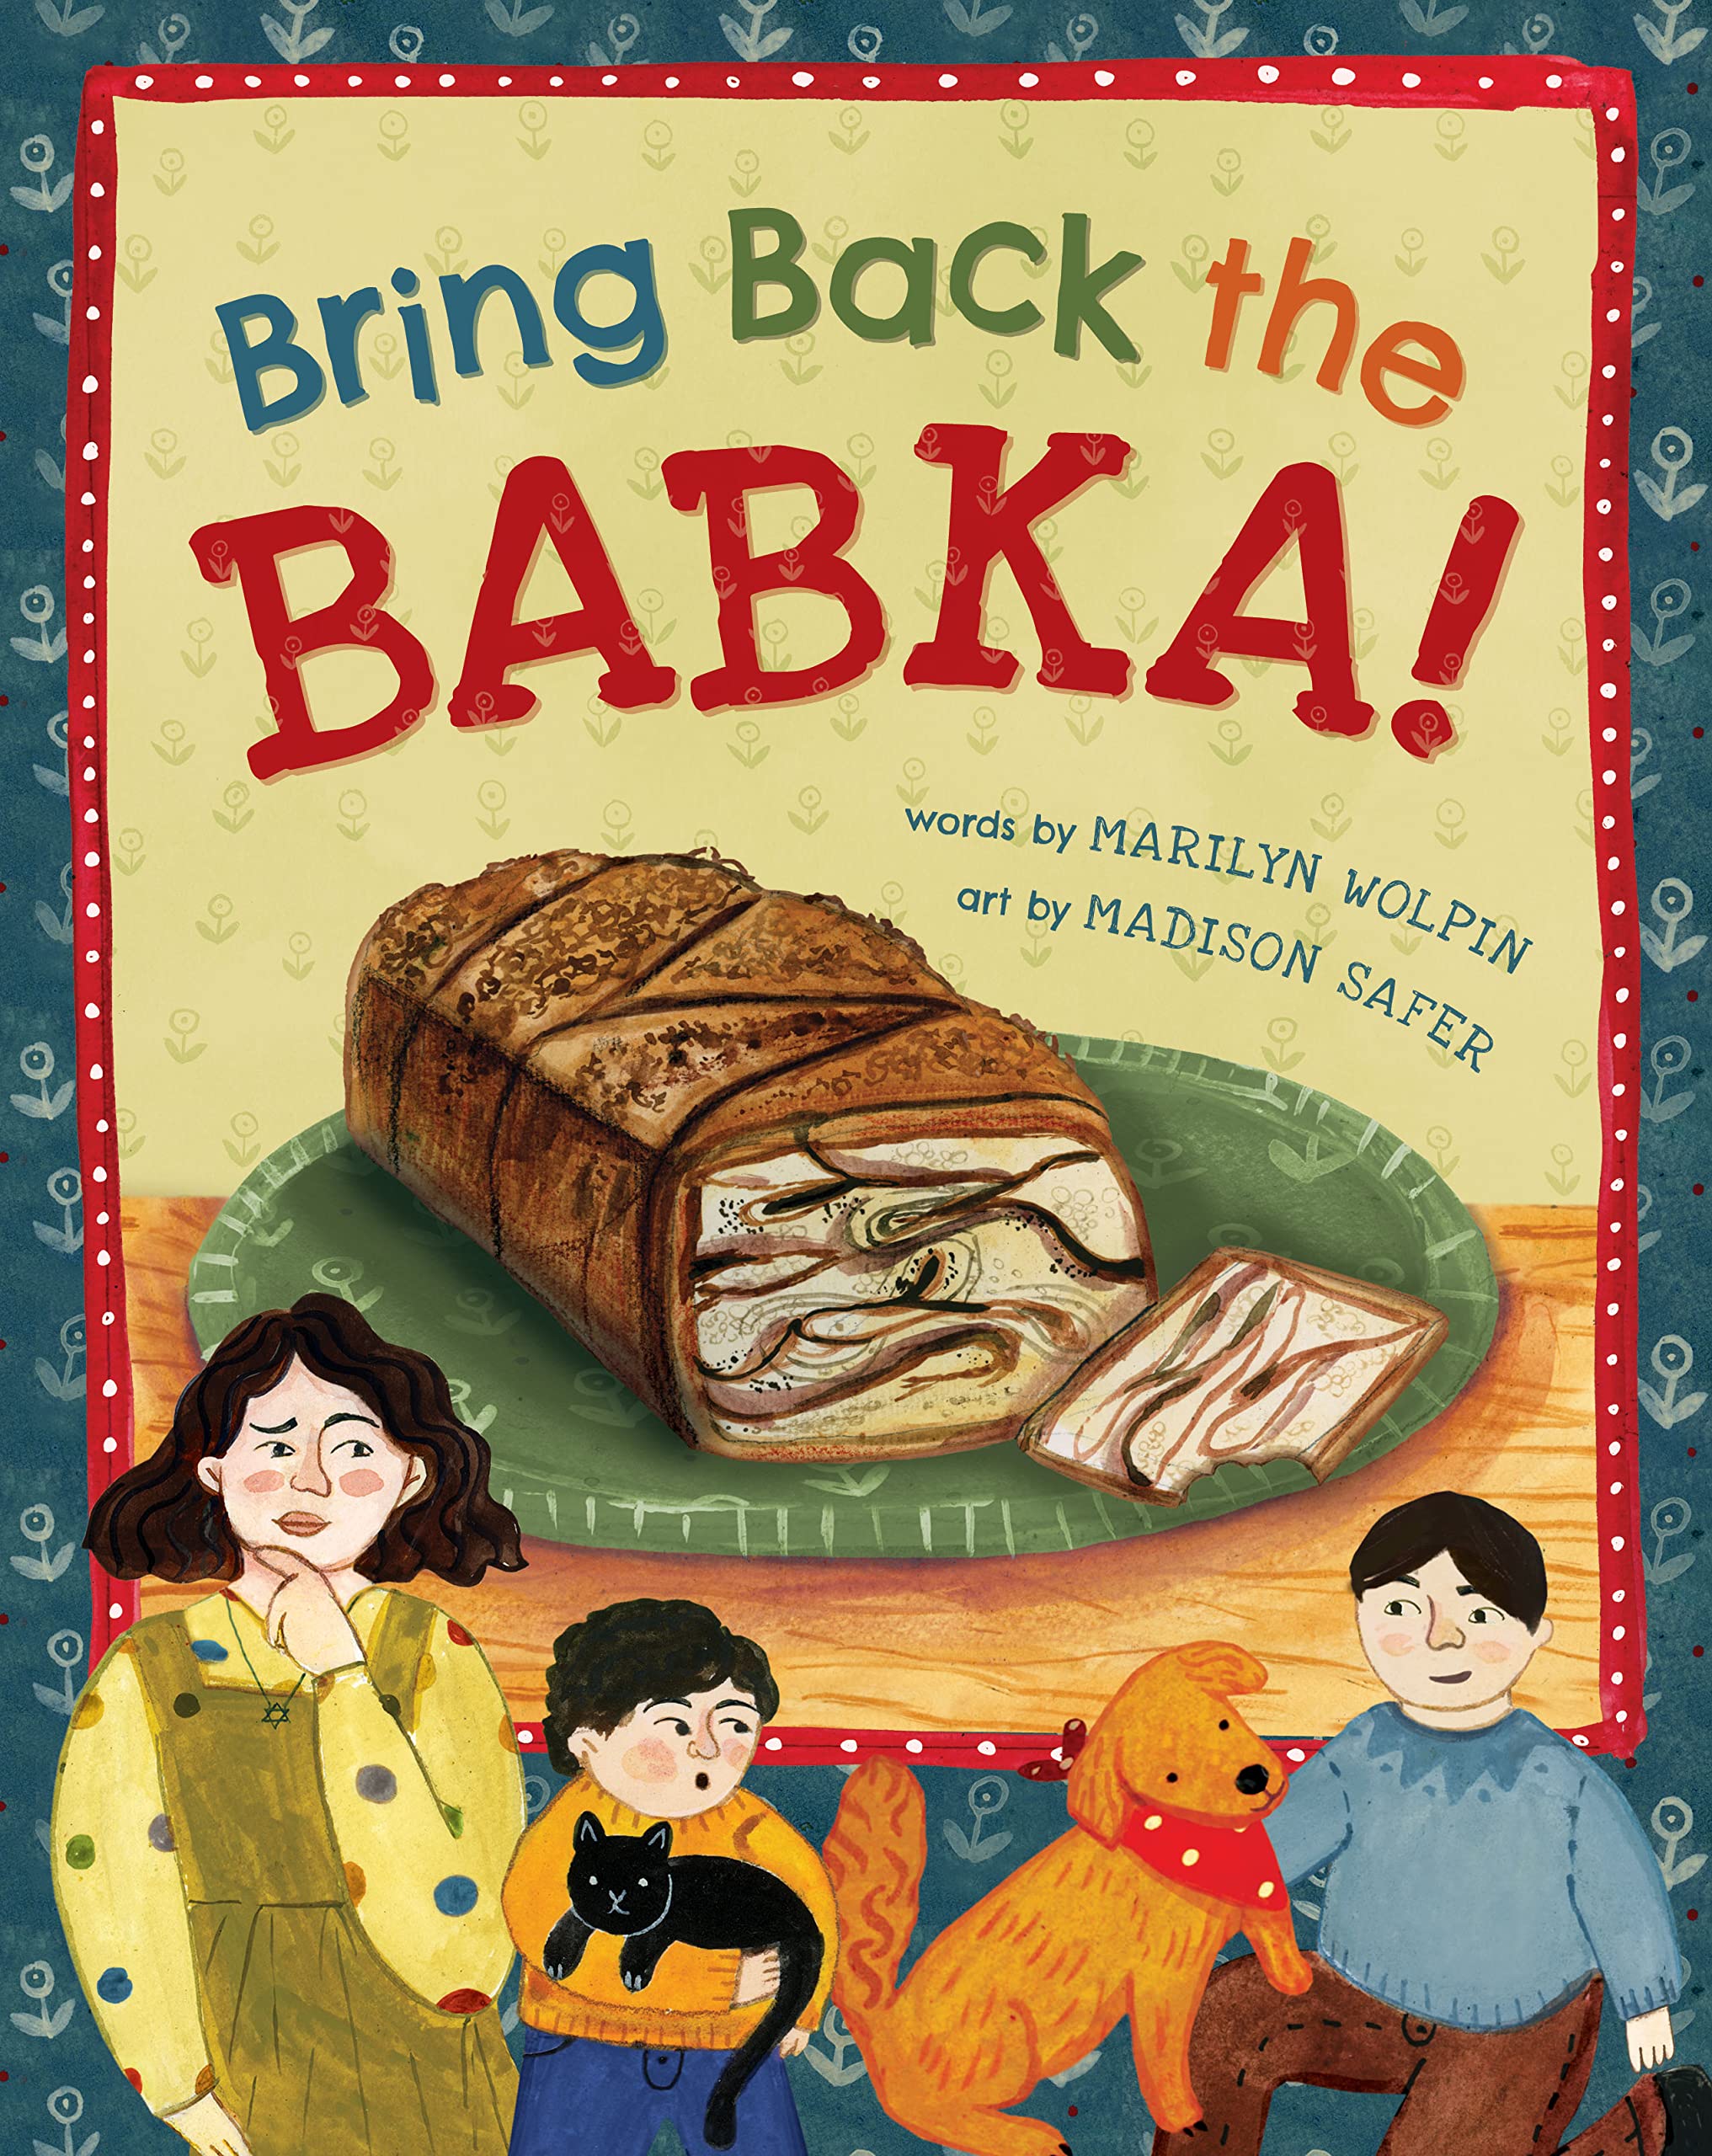 Bring Back the Babka!